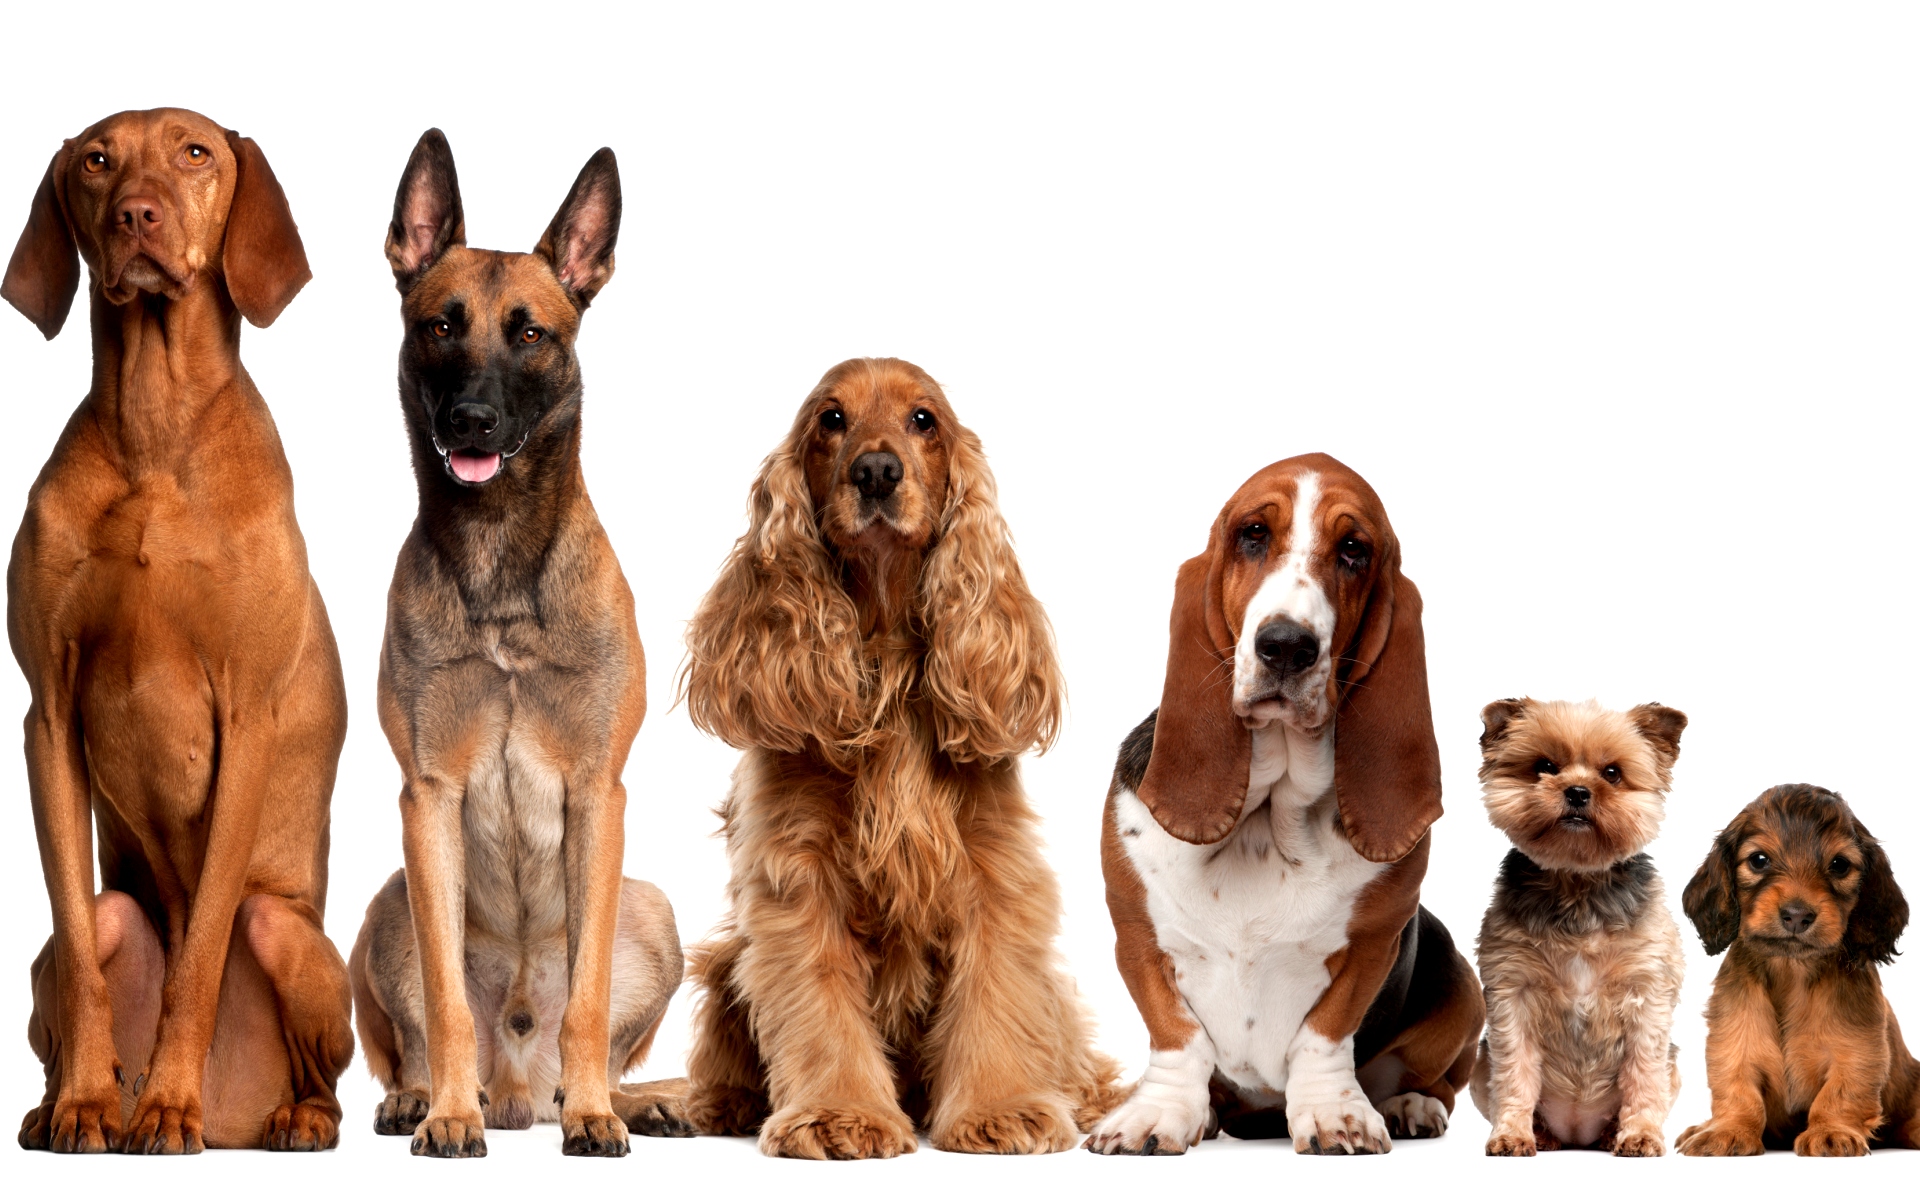 Картинка Собаки разных пород » Собаки » Животные » Картинки 24 - скачать  картинки бесплатно